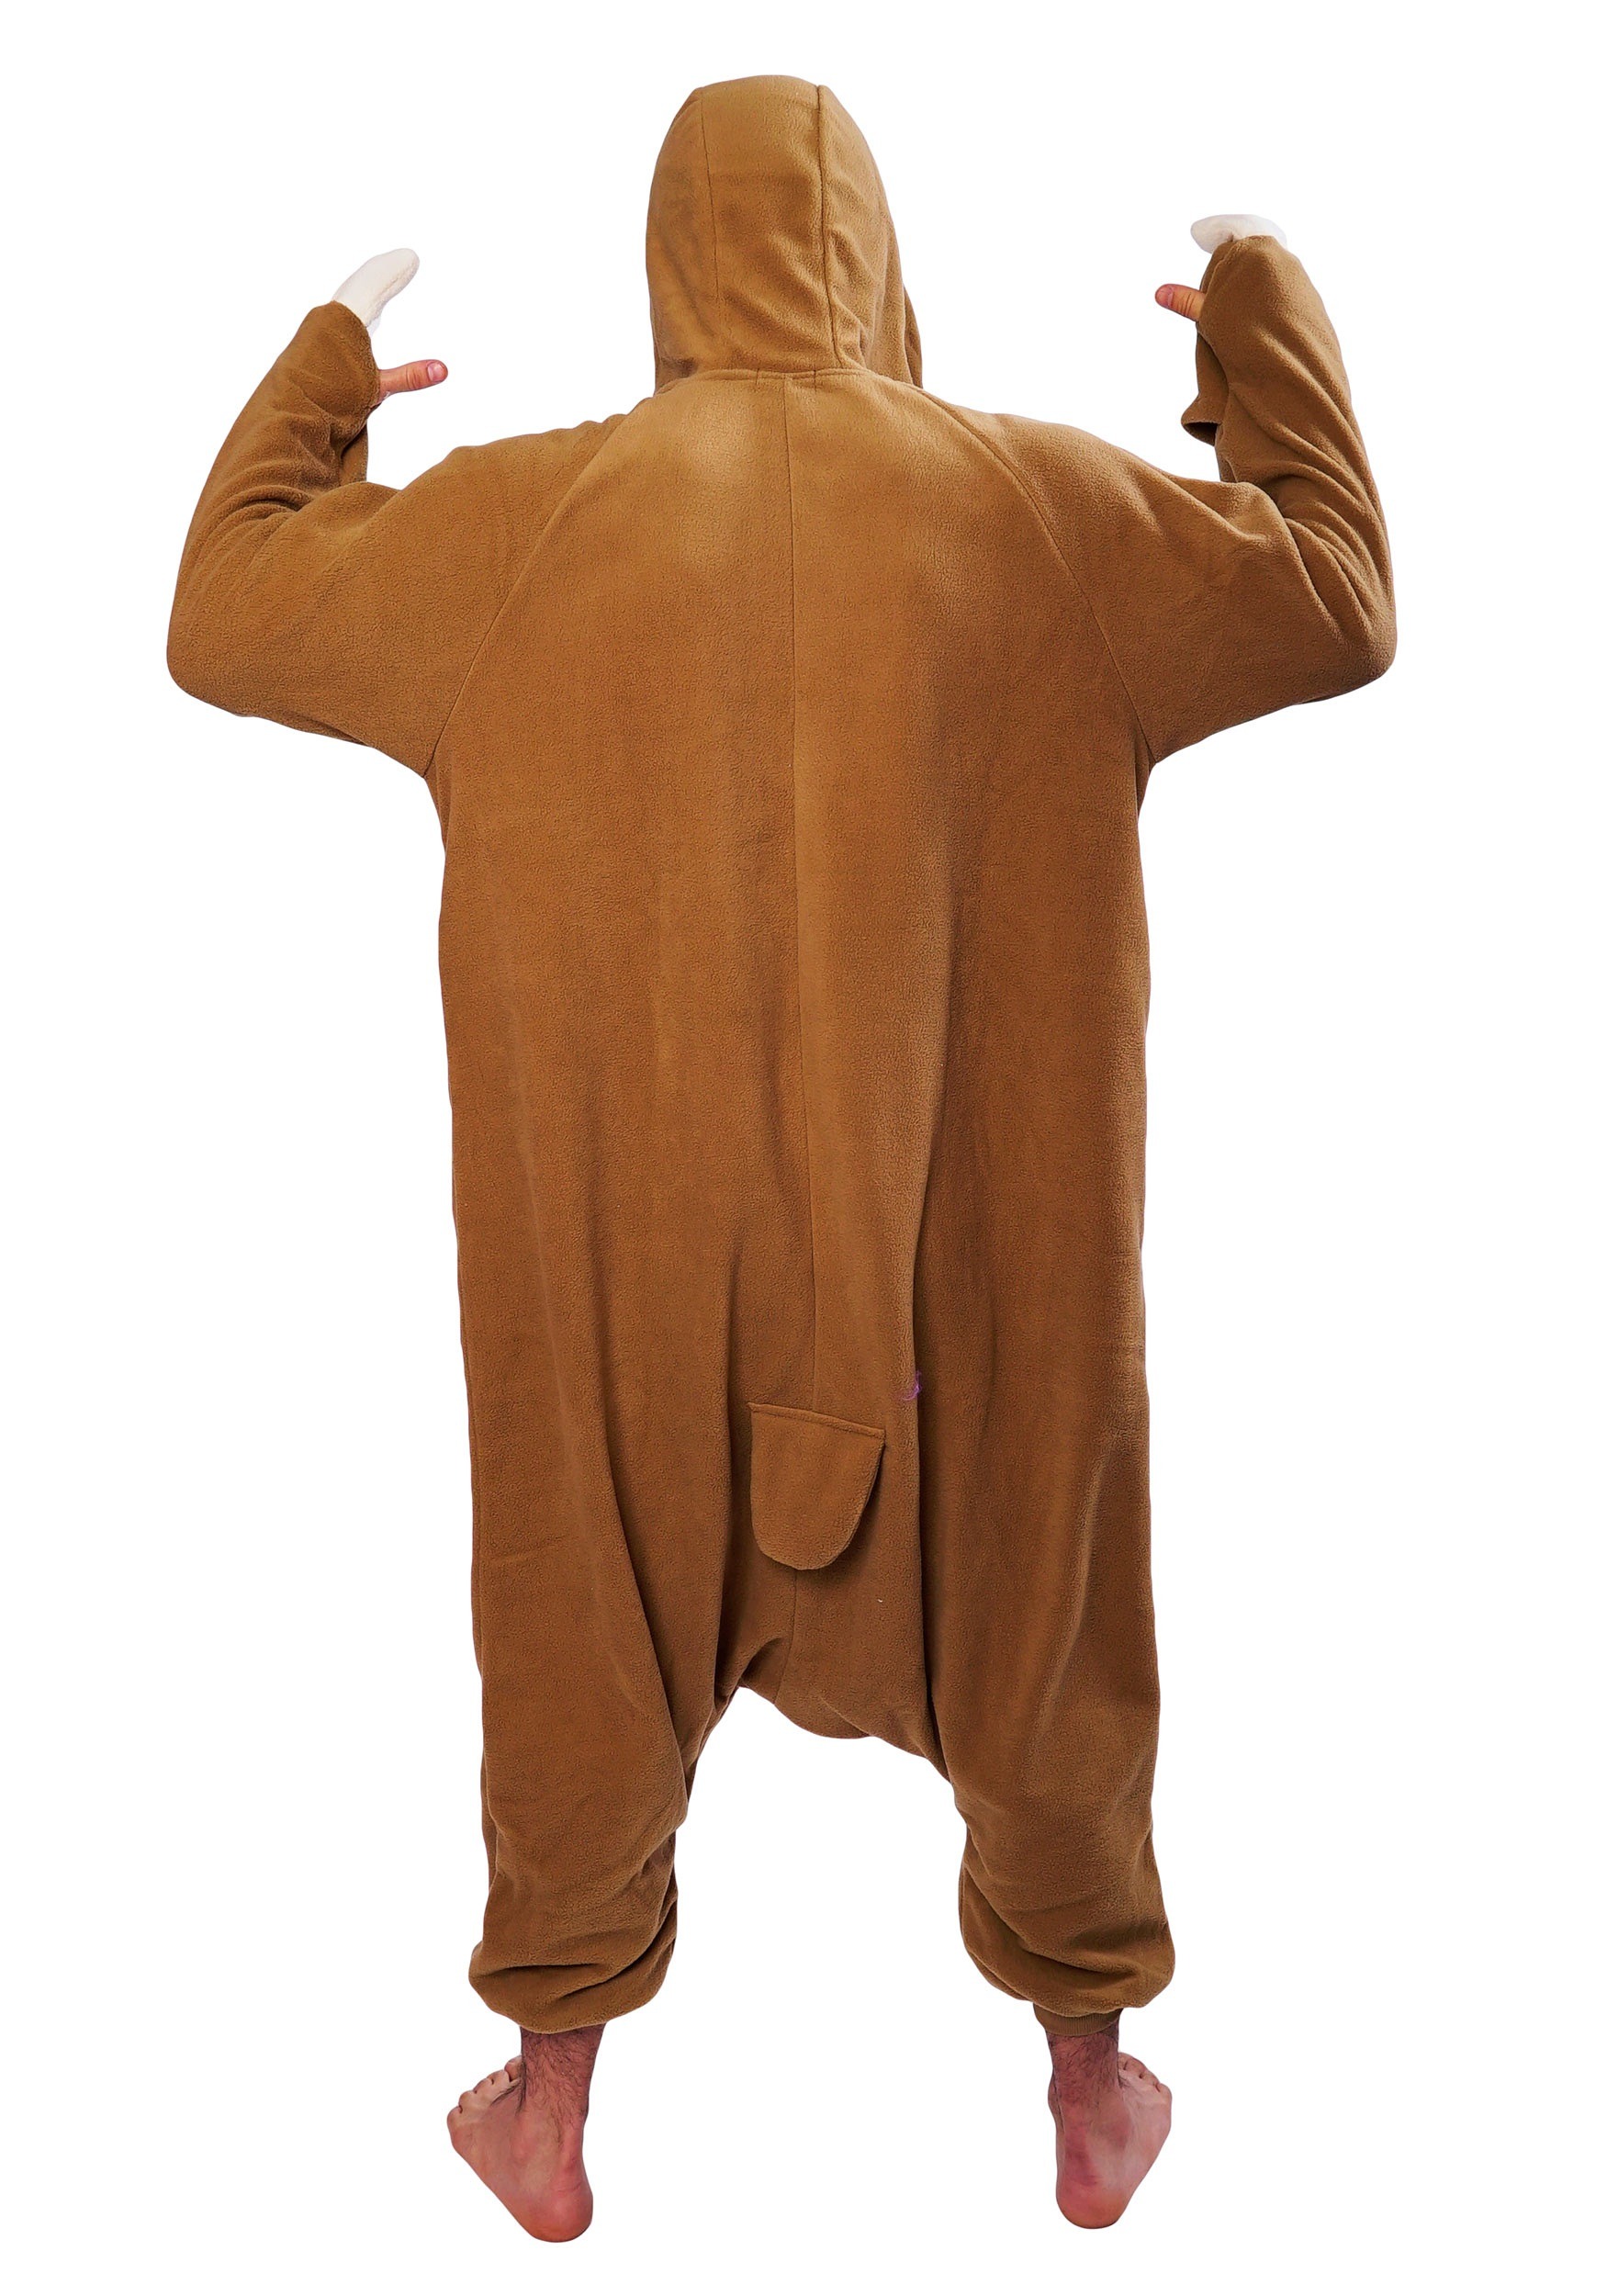 Sloth Kigurumi Pajama Costume For Adults